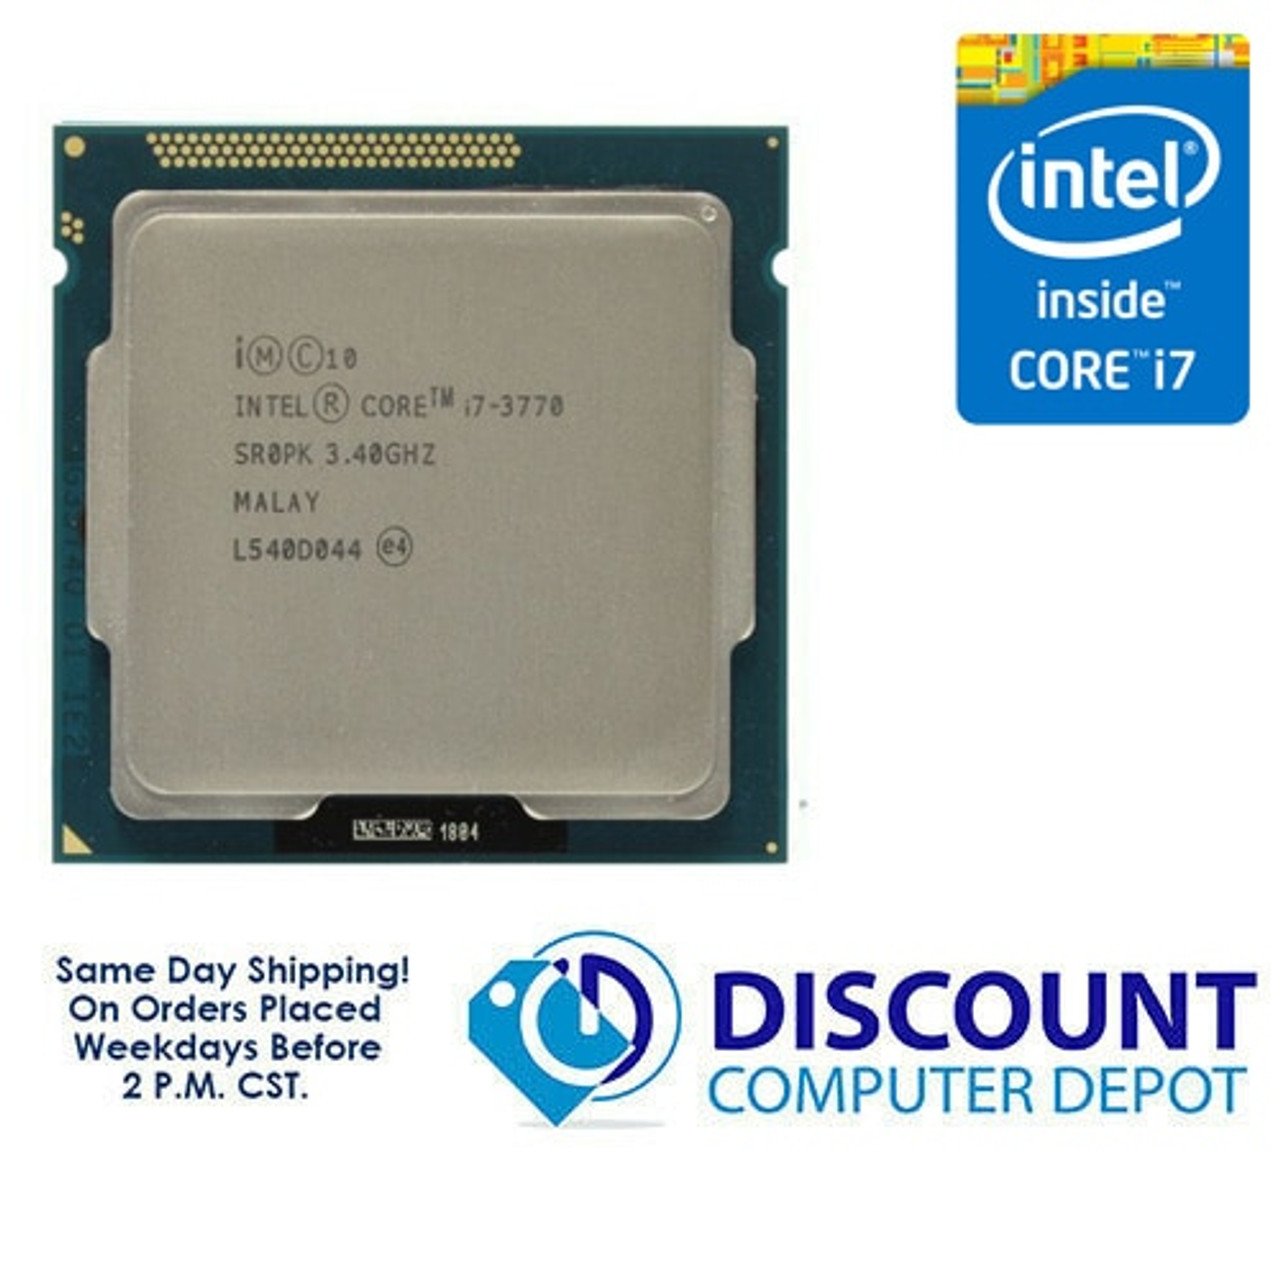 Intel Core i7-3770 3.40GHz Quad-Core CPU Computer Processor LGA1155 Socket  SR0PK